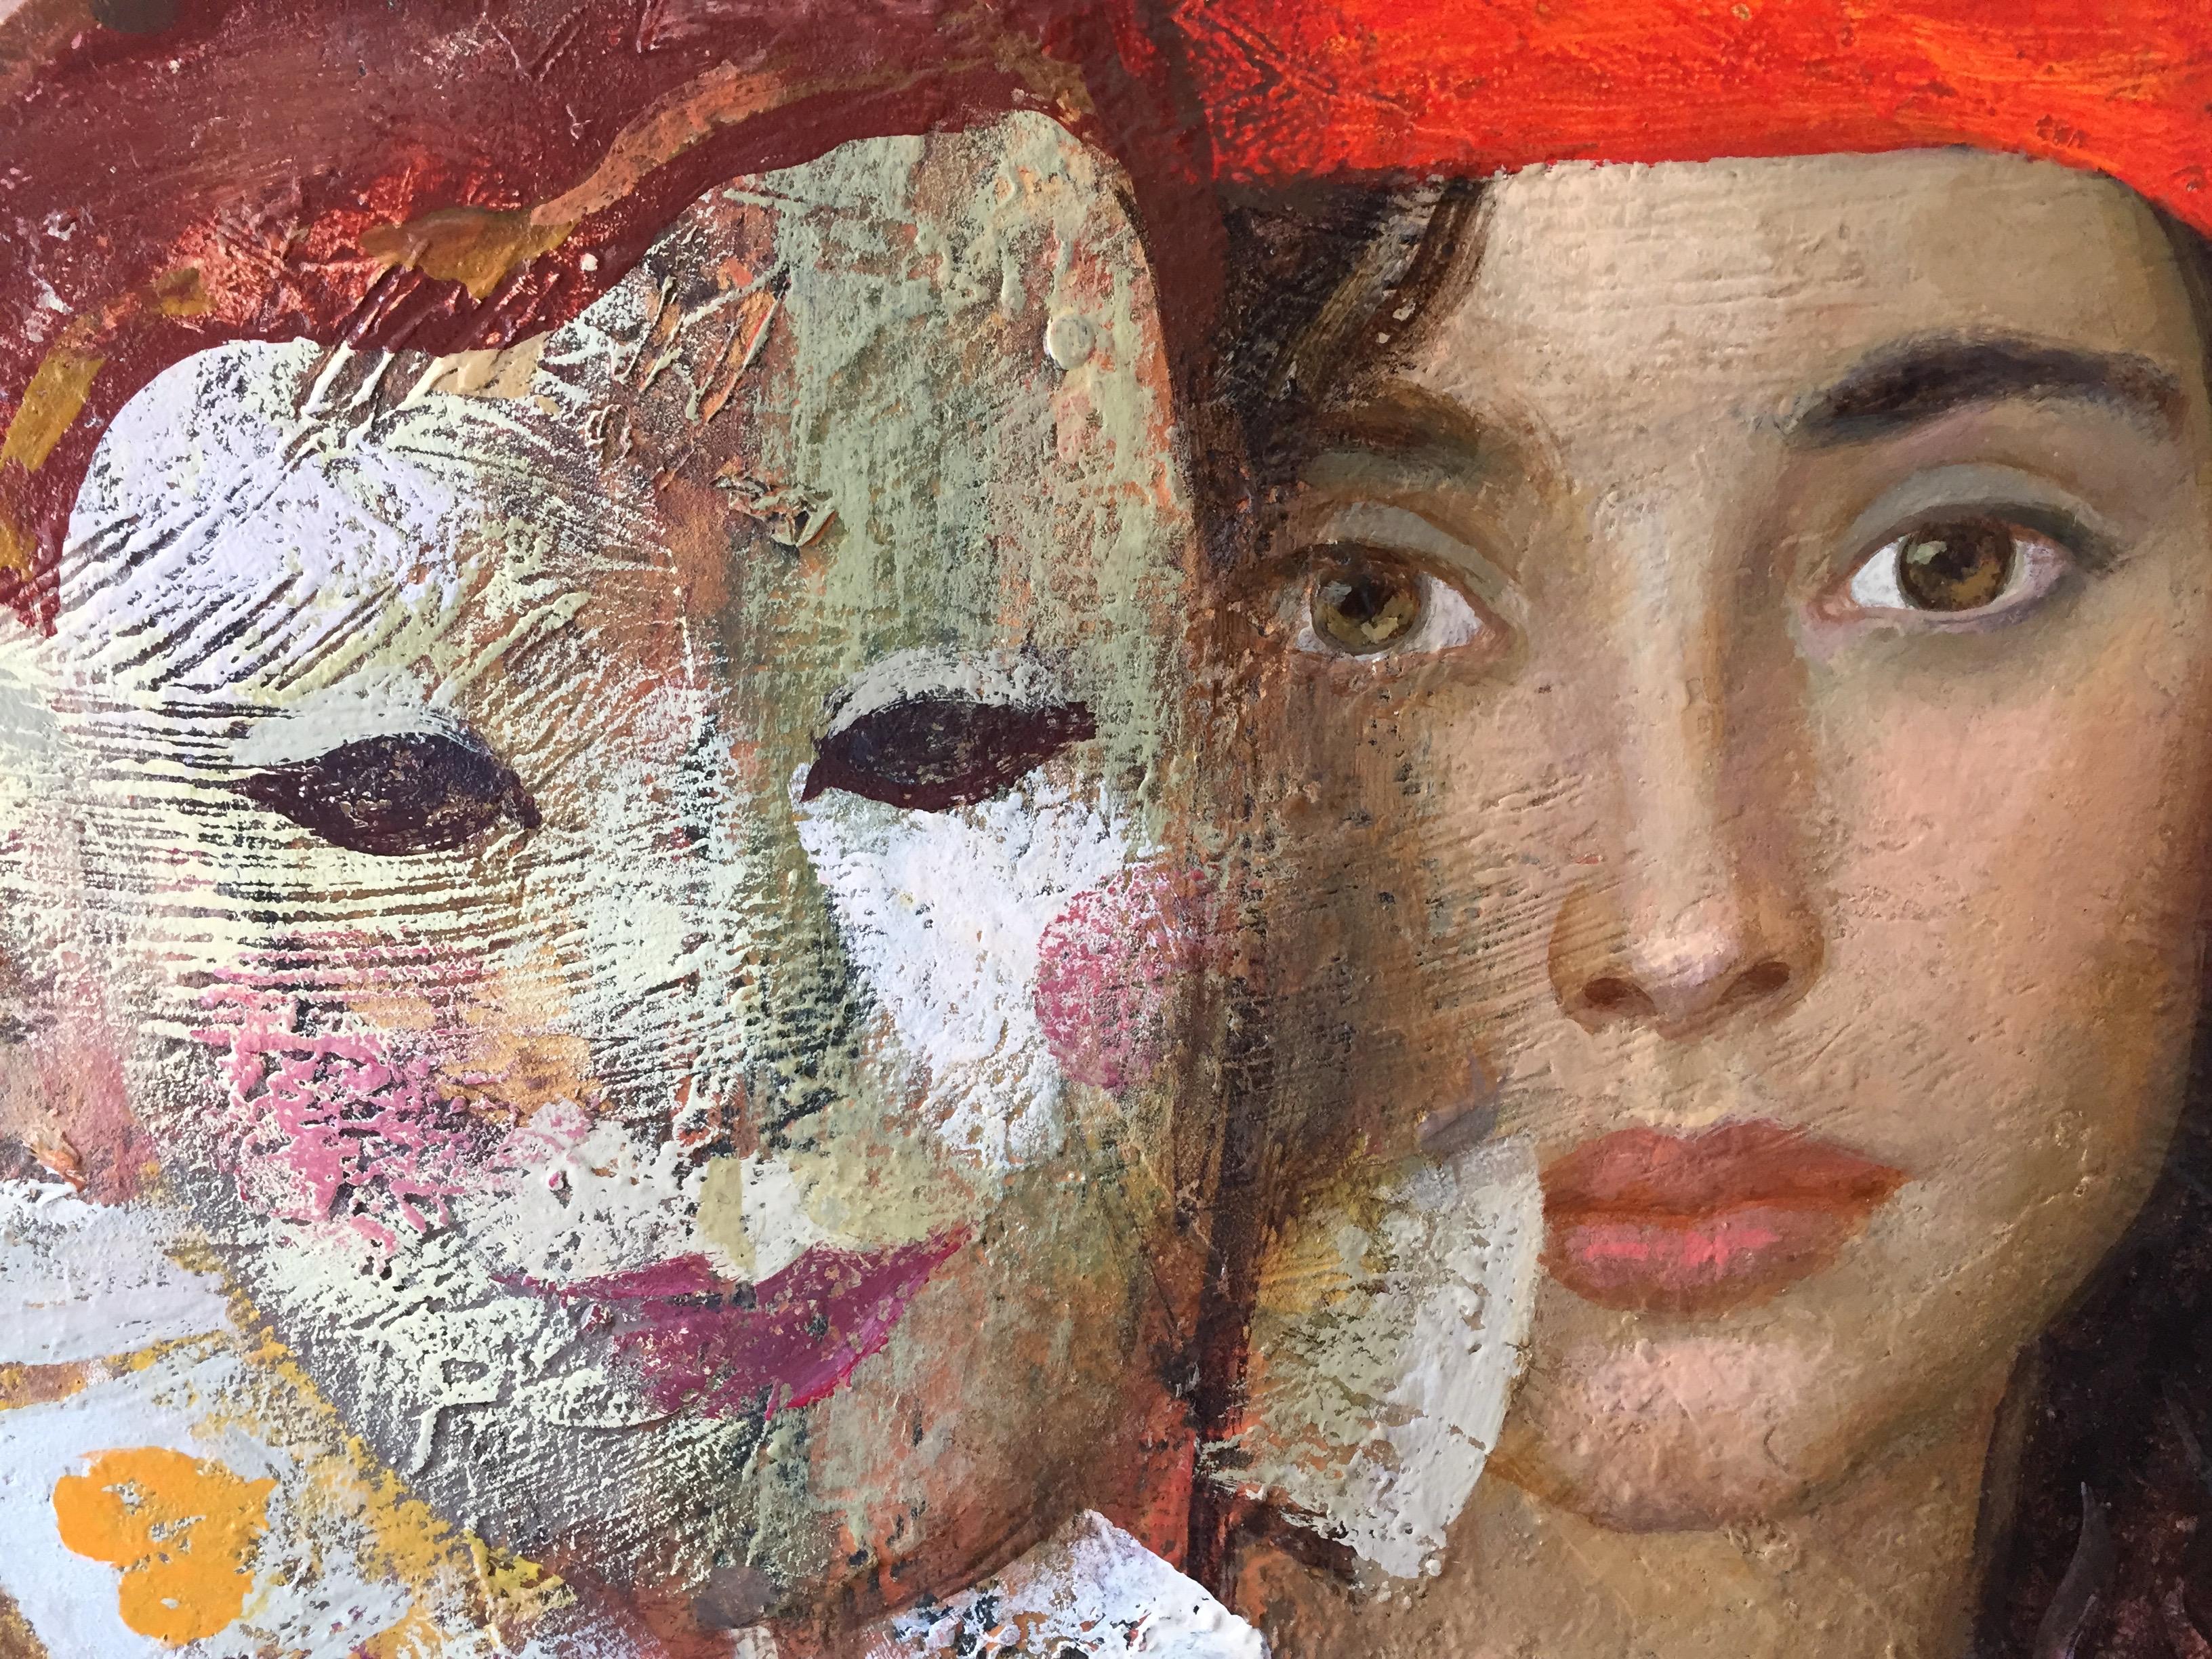 Casting, figurative Malerei (schöne Frauen und farbenfrohe Masken)  – Painting von Goyo Dominguez